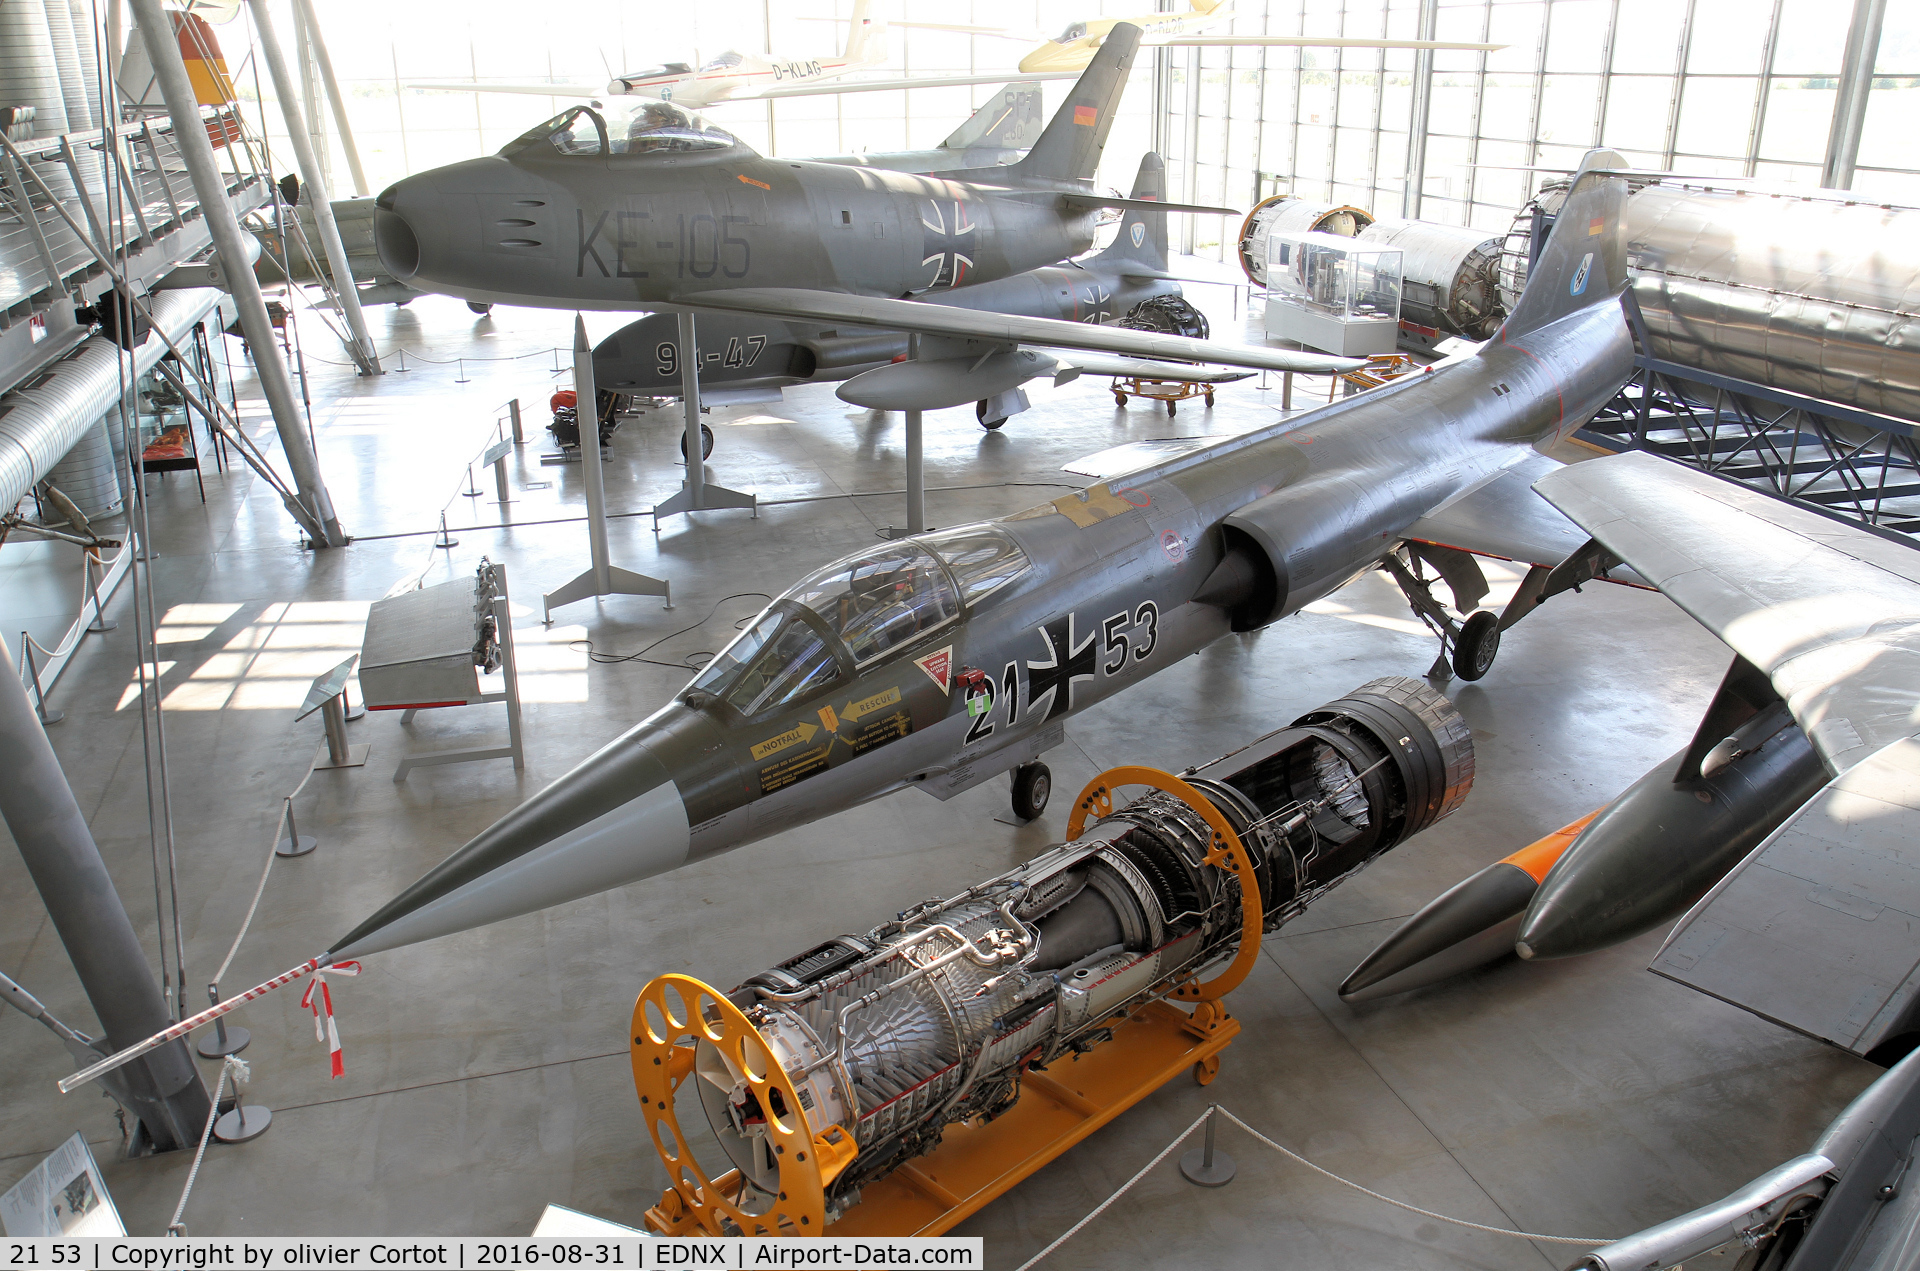 21 53, Lockheed F-104G Starfighter C/N 683-7022, In a very nice museum - Deutsches Museum Flugwerft Schleissheim, near Munich.